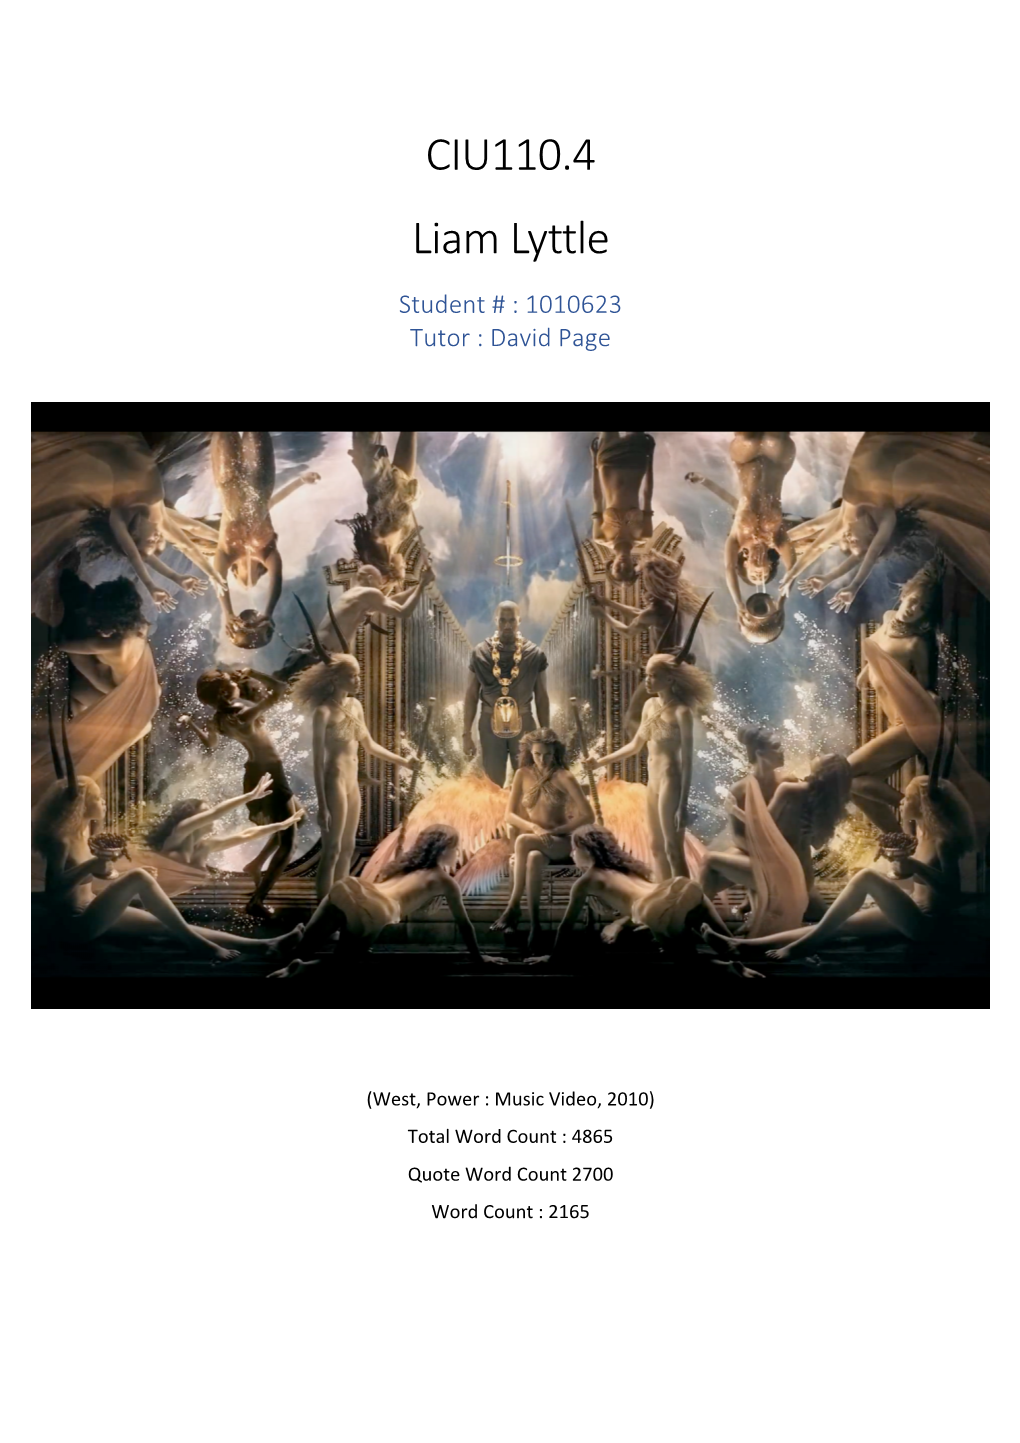 CIU110.4 Liam Lyttle